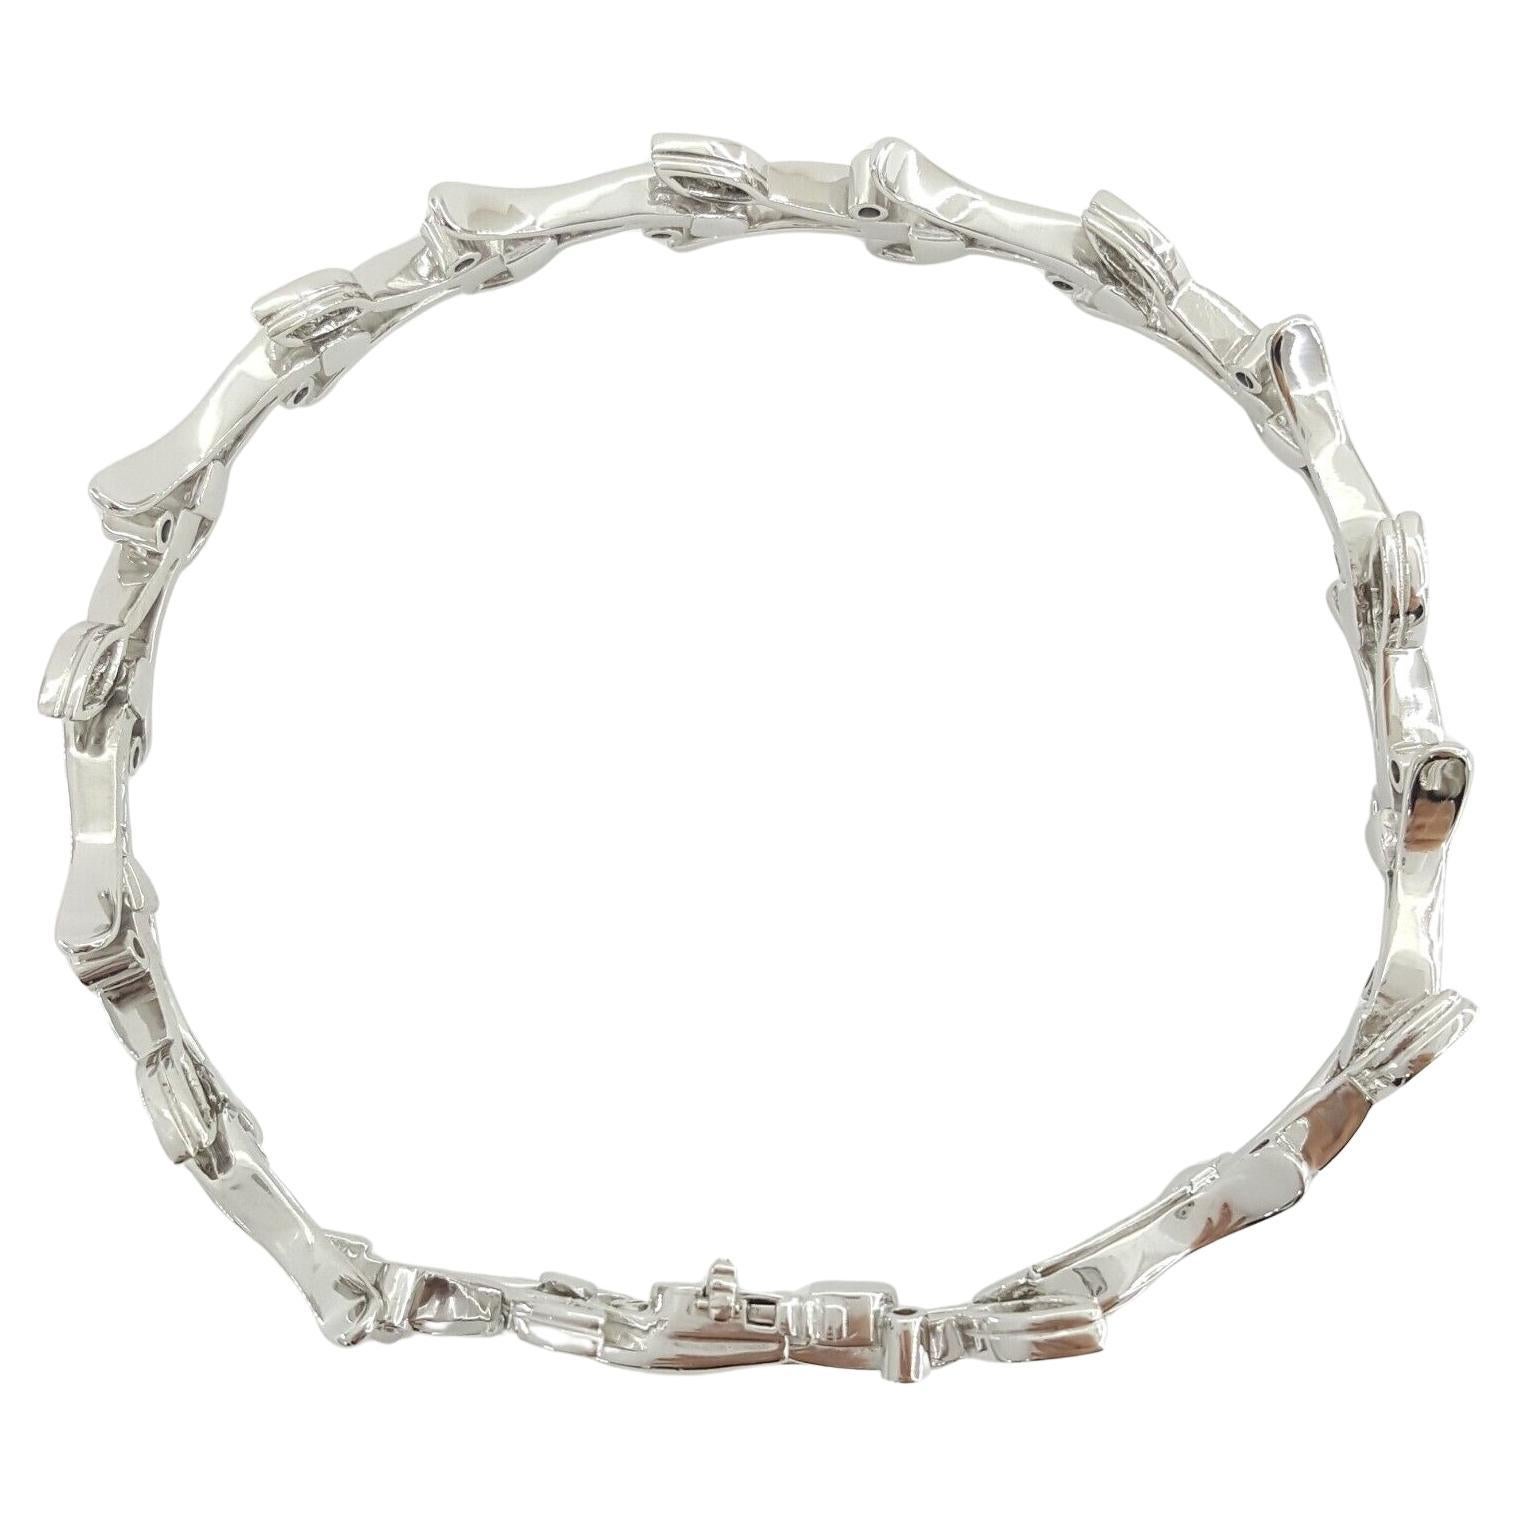 Dieses luxuriöse Platin-Diamantarmband von Tiffany & Co. aus der Garland Leaf-Kollektion 1999 ist ein exquisites Beispiel für zeitloses Design und meisterhafte Handwerkskunst. Mit einem Gewicht von 31,7 Gramm und einer Länge von 7 Zoll ist dieses